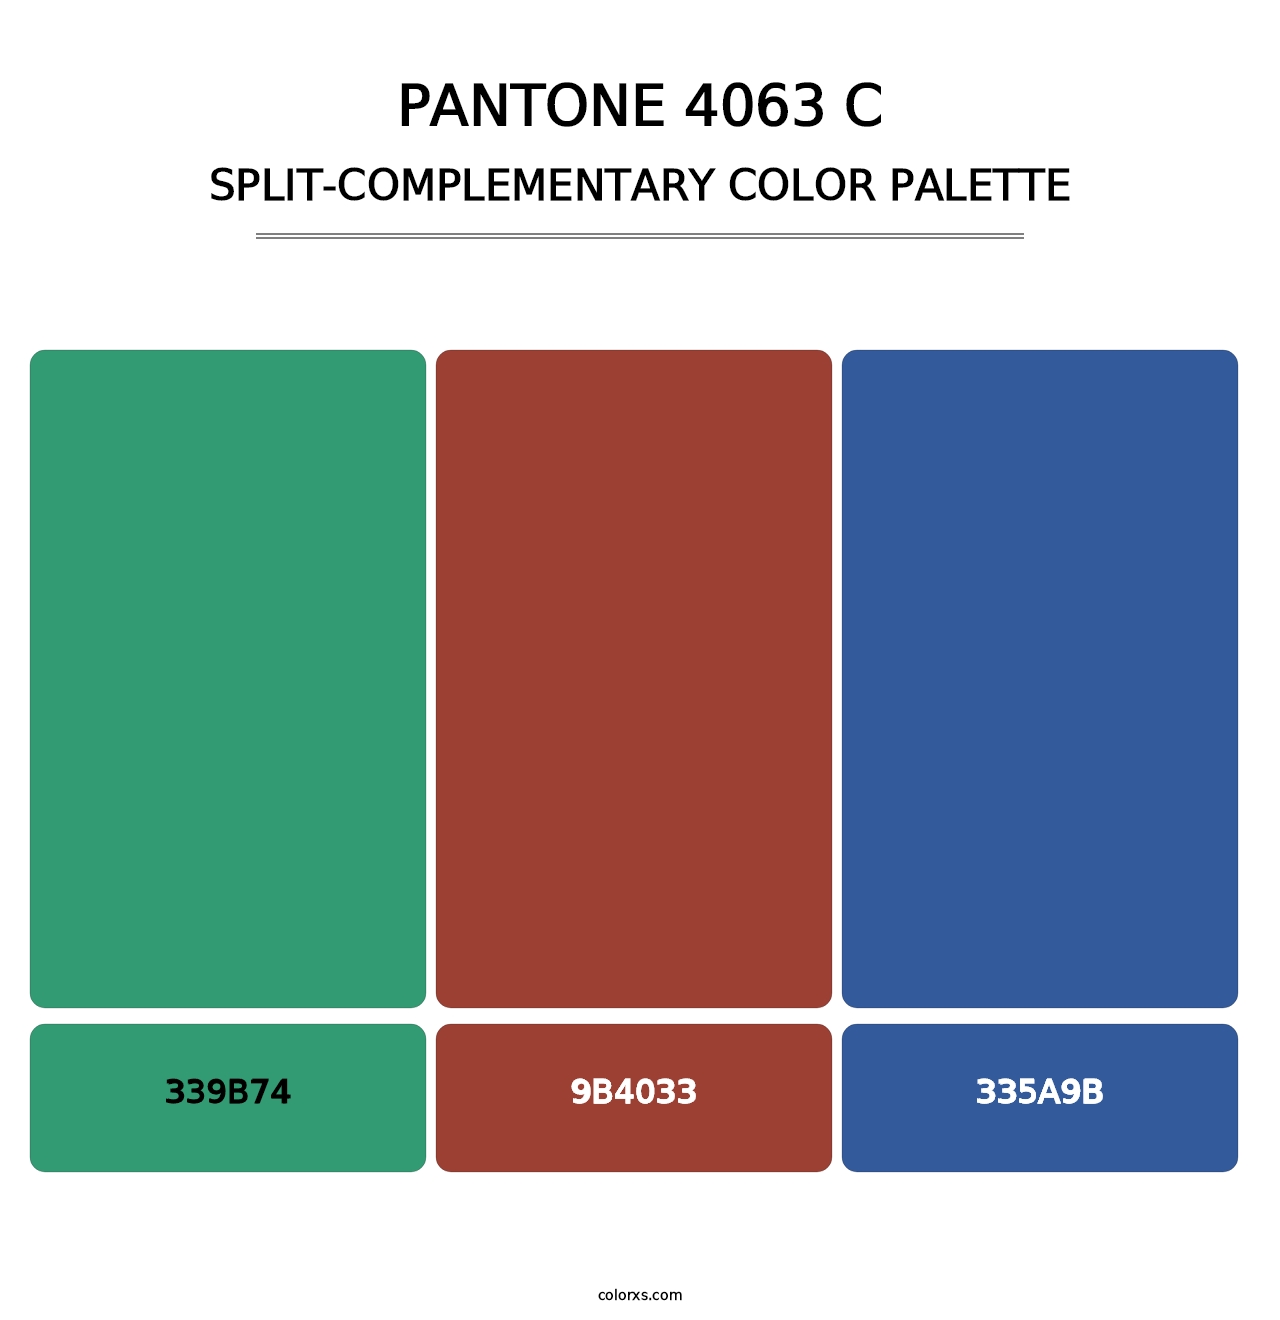 PANTONE 4063 C - Split-Complementary Color Palette